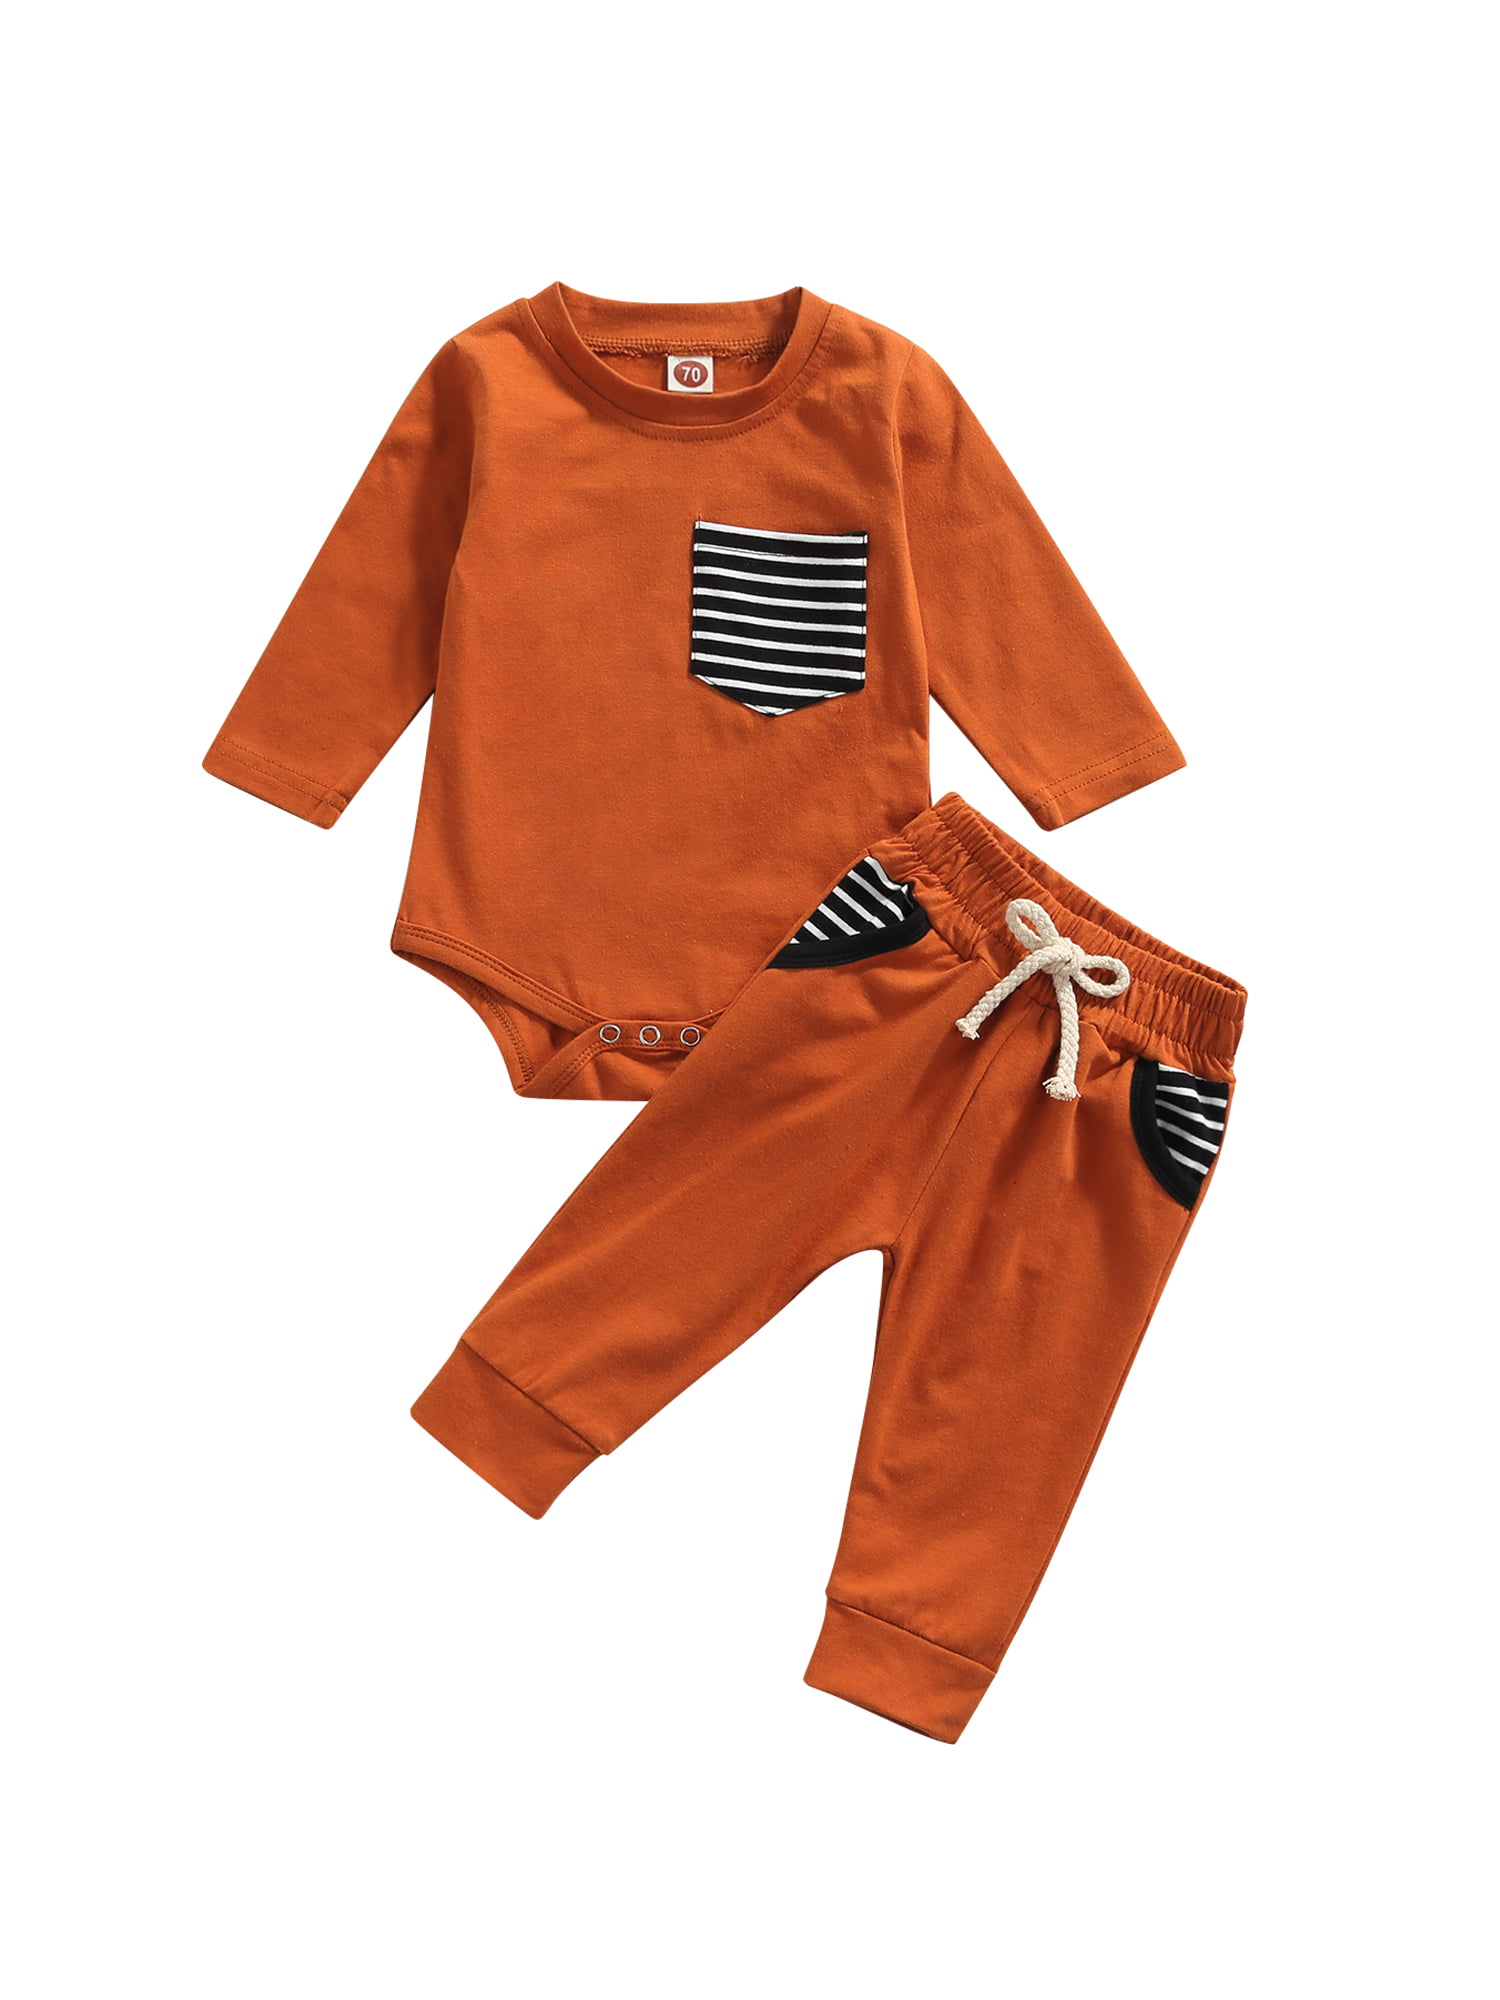 Unisex Jumbo Cord Baby And Toddler Dungarees In Burnt Orange Clothing Unisex Kids Clothing Unisex Baby Clothing Trousers 